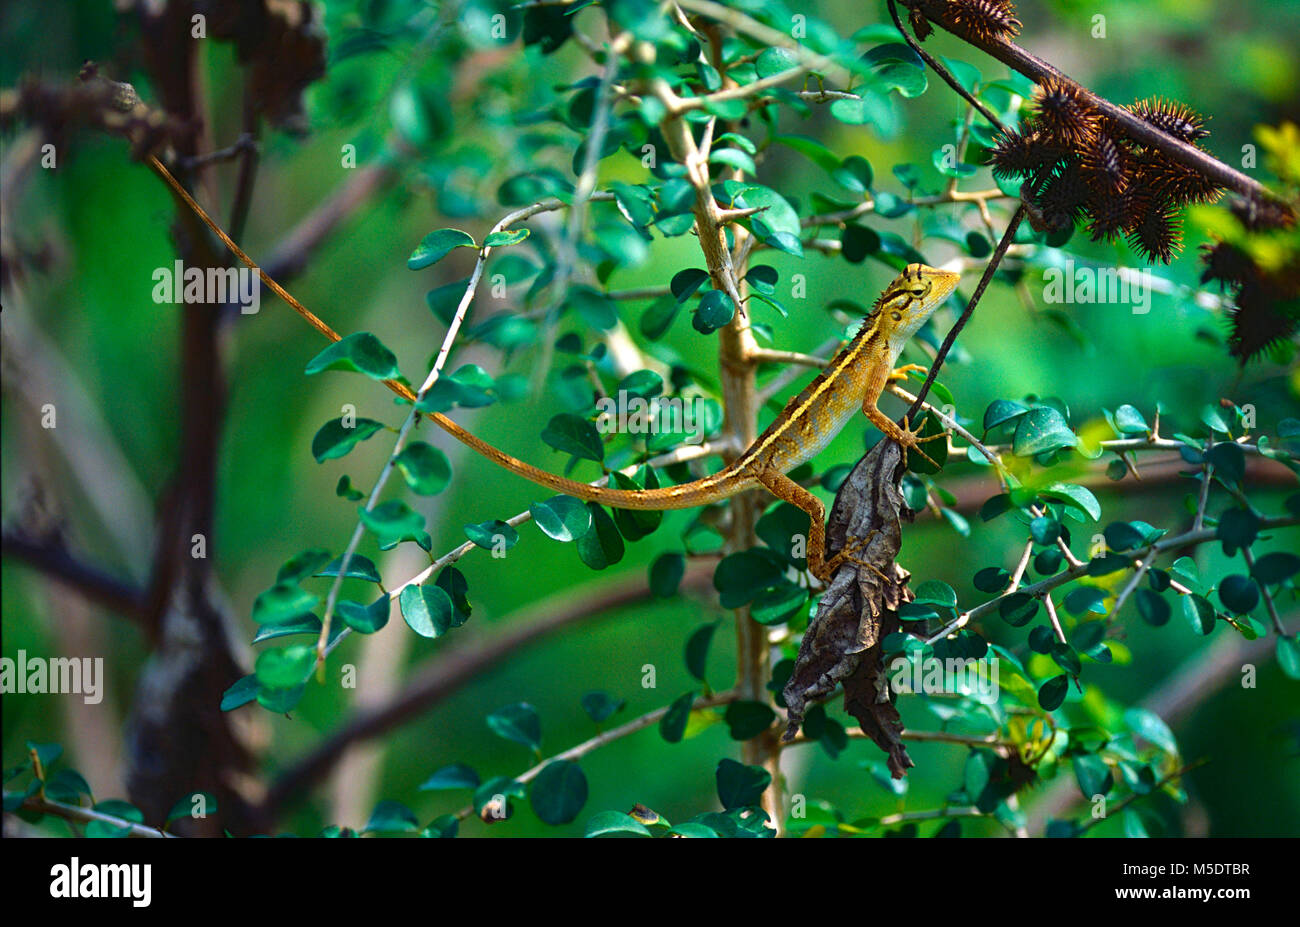 Wiegmann's Agama, Otocryptis wiegmanni, Agamidae, Lizard, reptile, animal, Sri Lanka Stock Photo